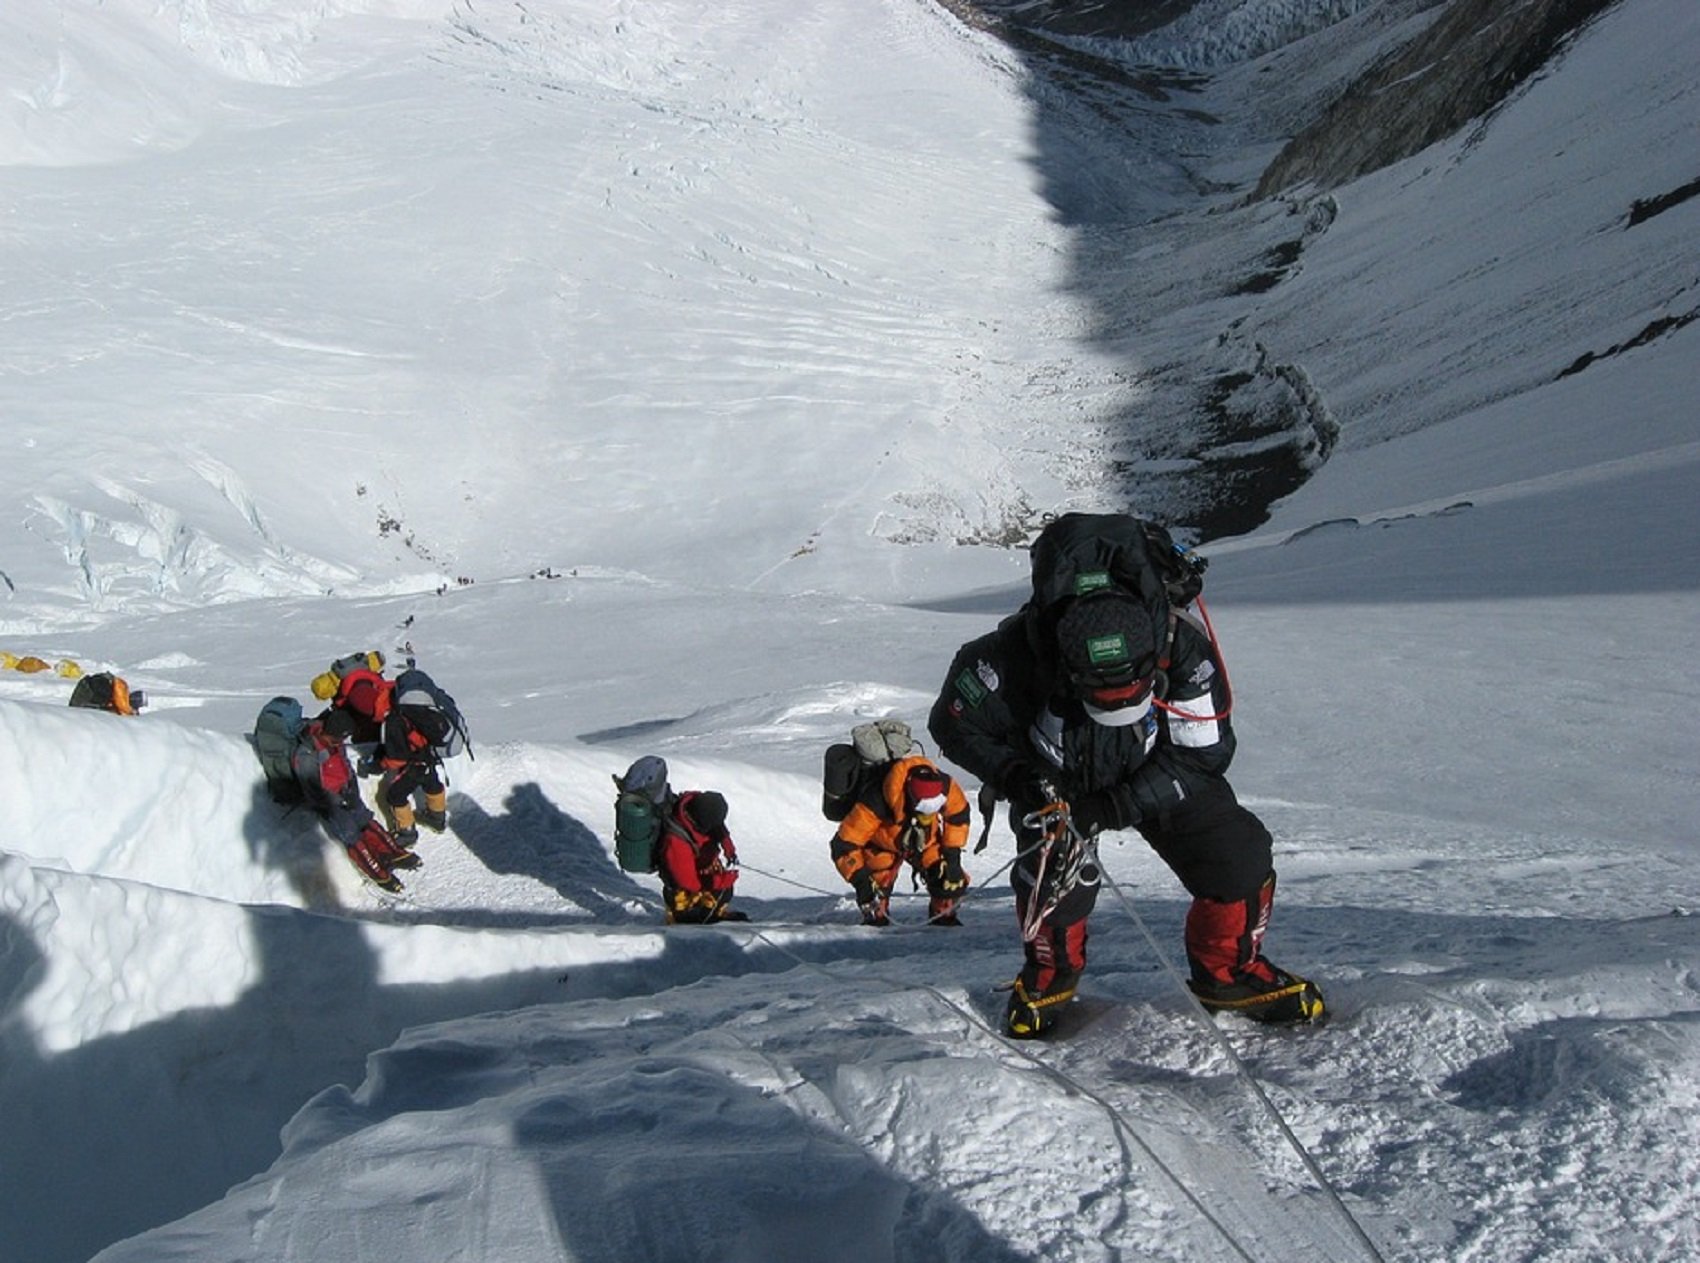 Los dolores de barriga en el Everest ya tienen solución: instalan un lavabo